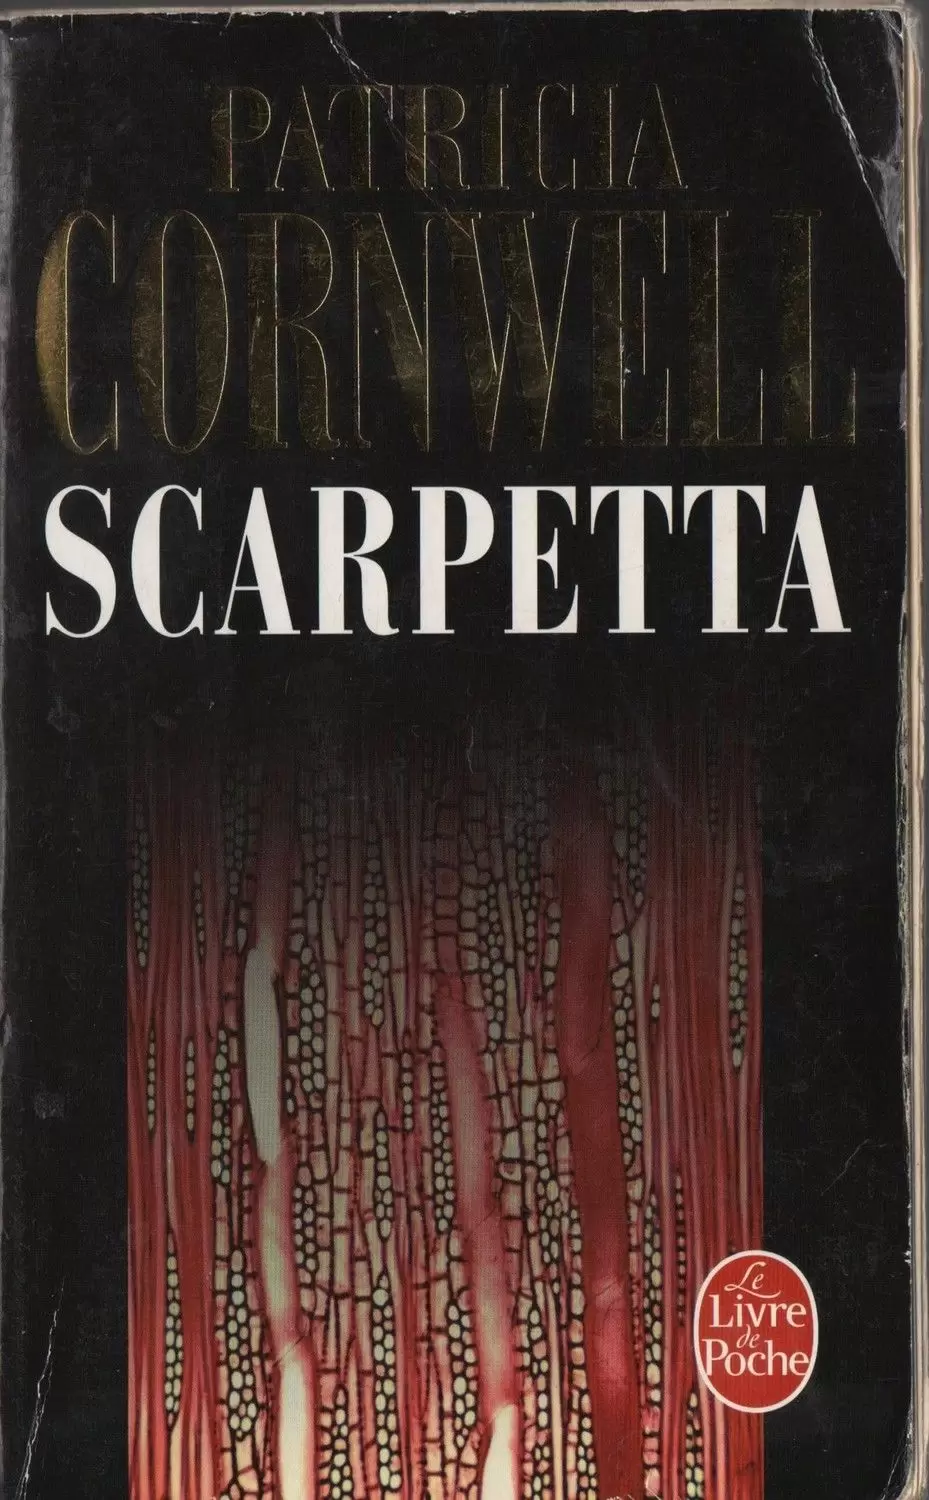 Patricia Cornwell - Scarpetta